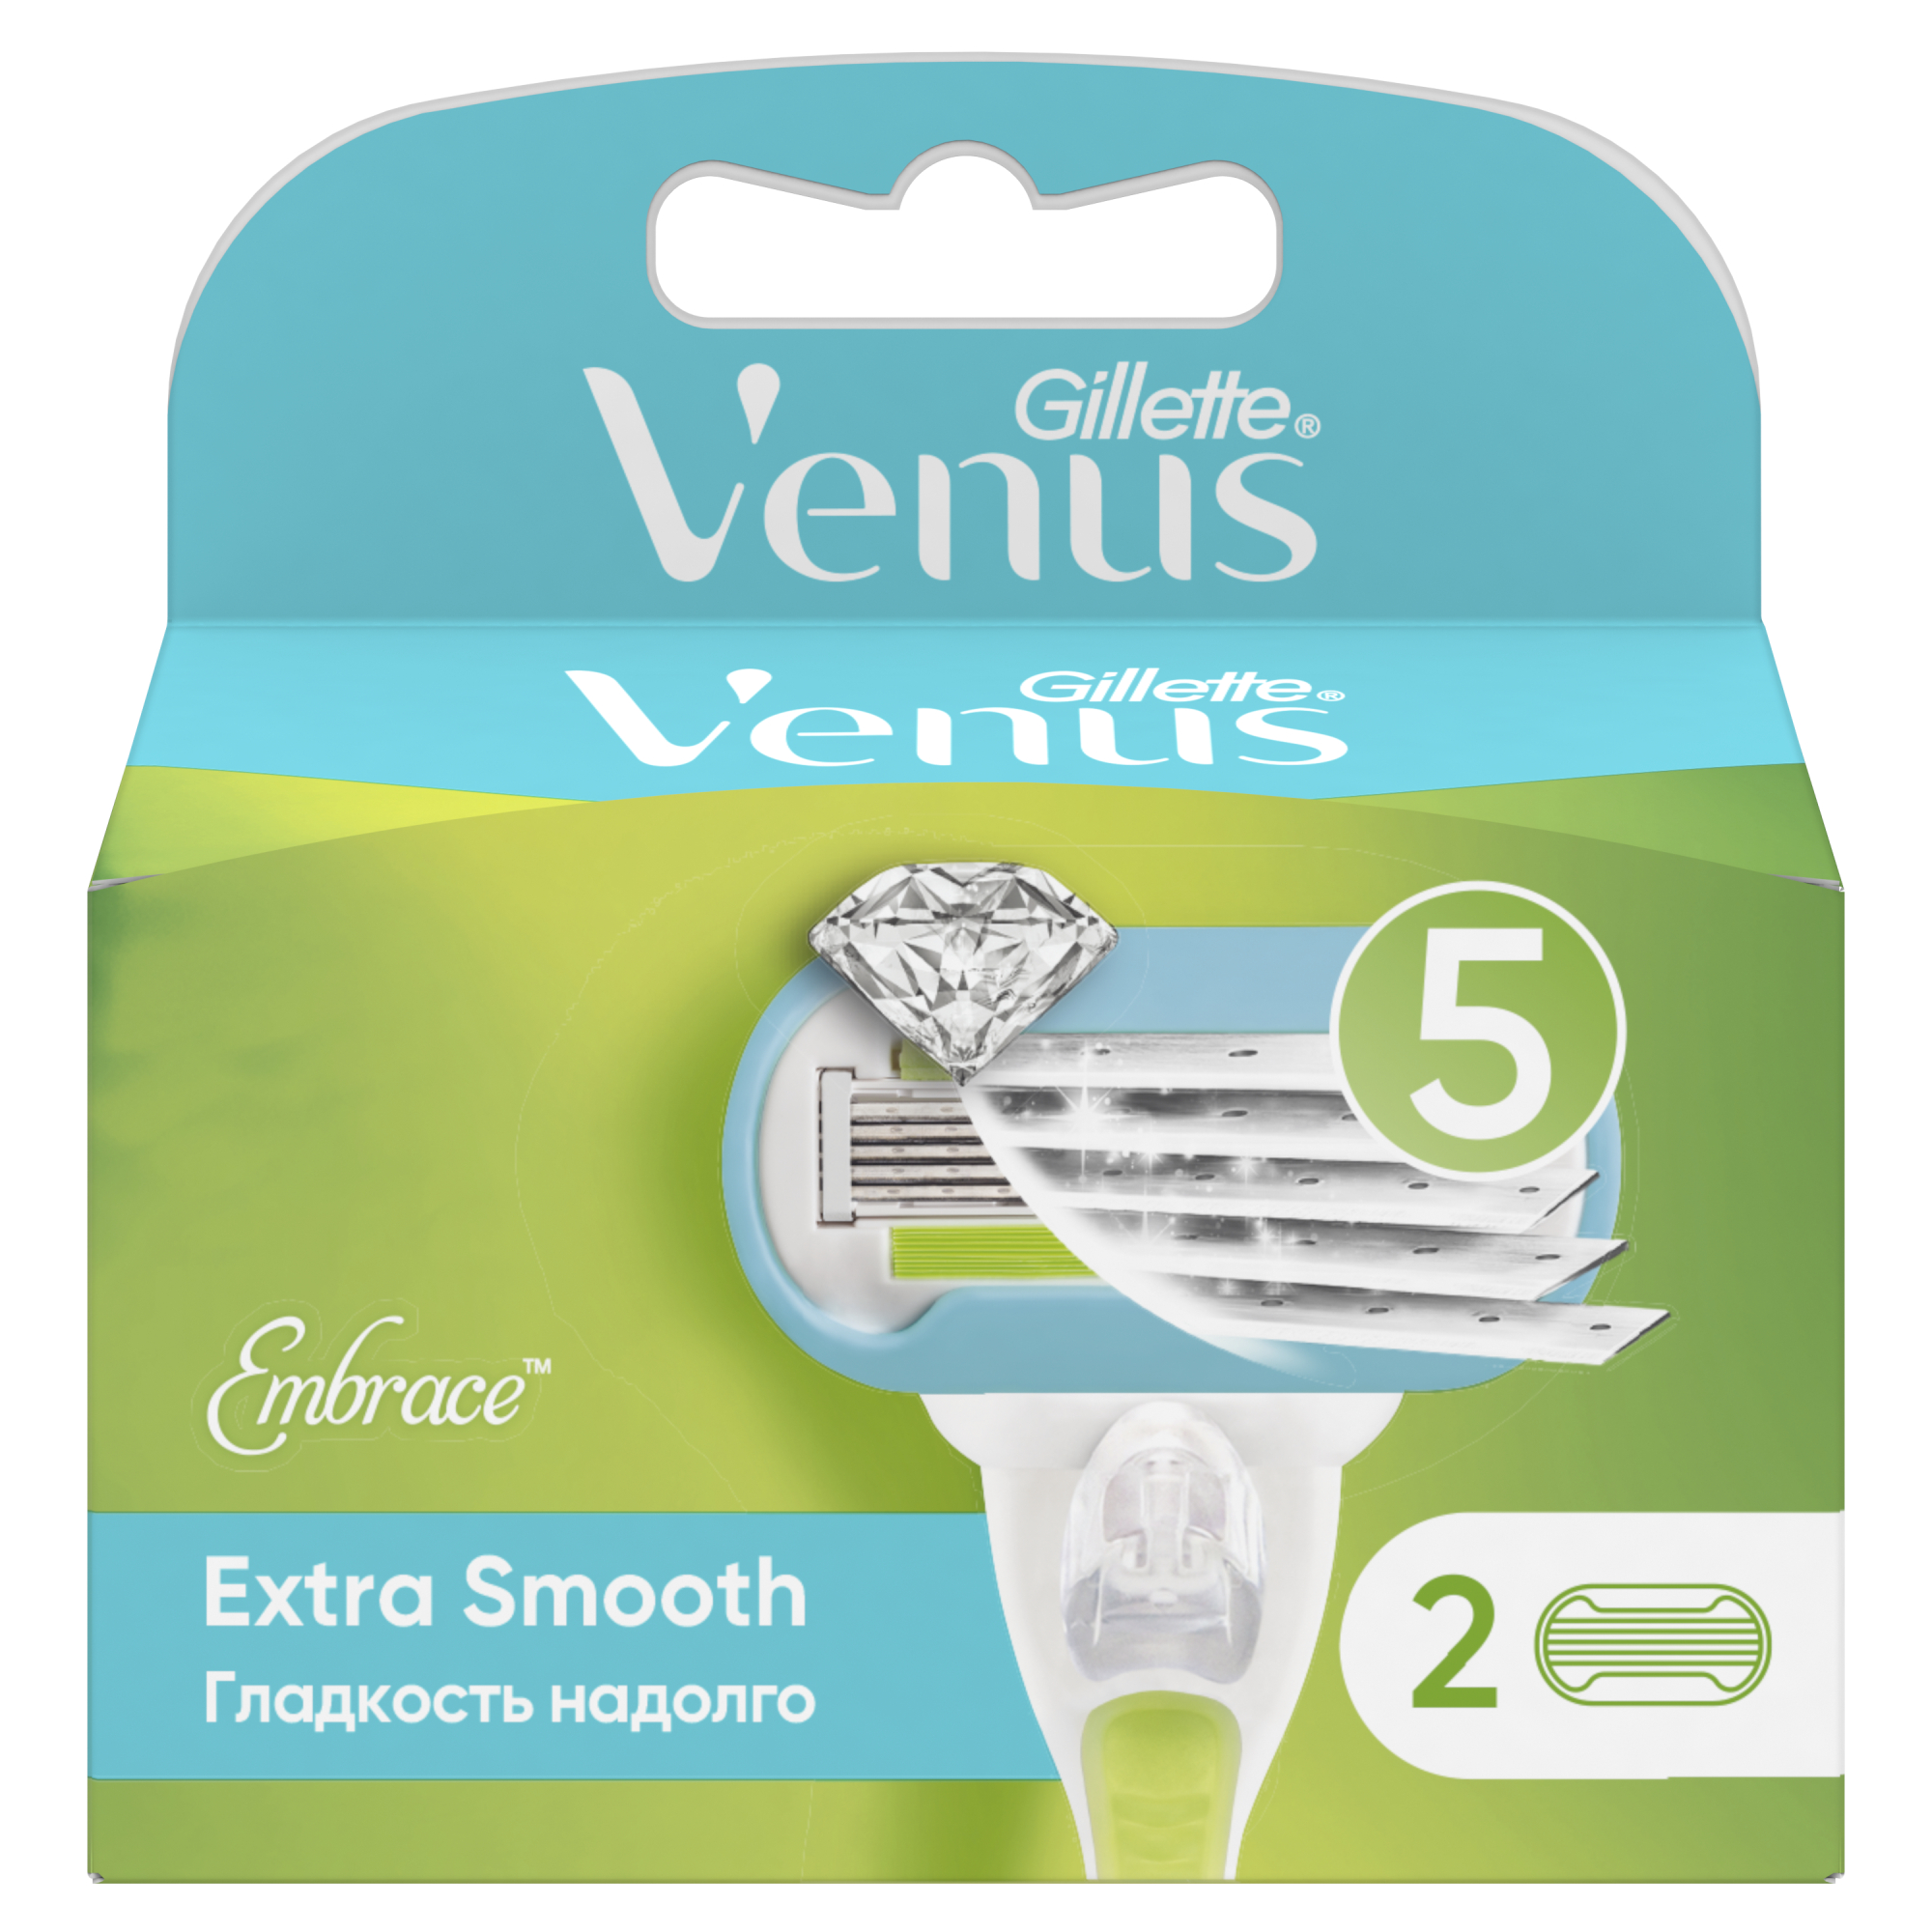 Сменные кассеты для женской бритвы Venus Extra Smooth, 5 лезвий, 2 шт невероятная гладкость надолго сменные кассеты gillette venus smooth 6 шт